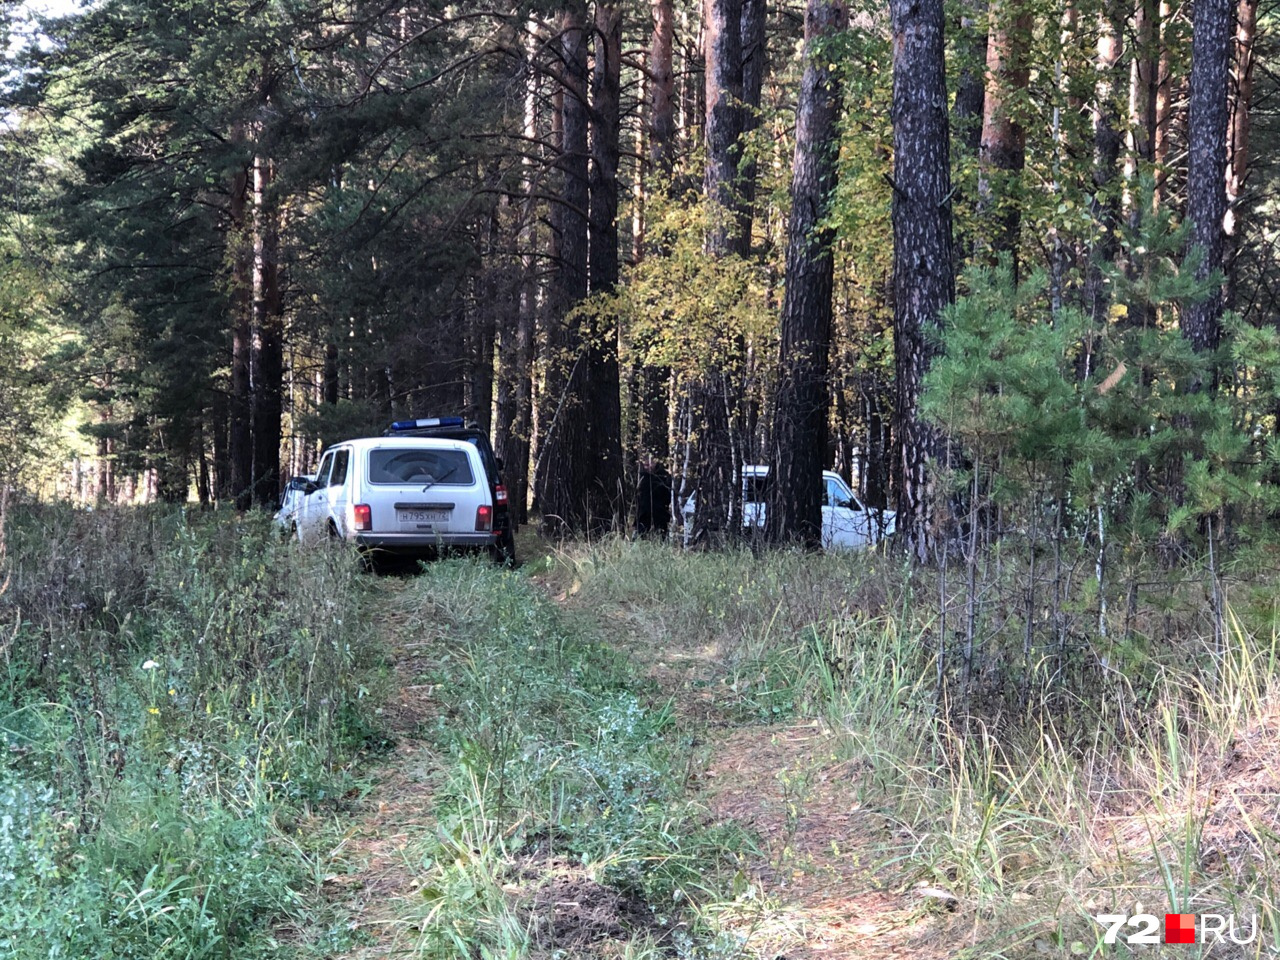 Следом за СКР в лес отправились полицейские